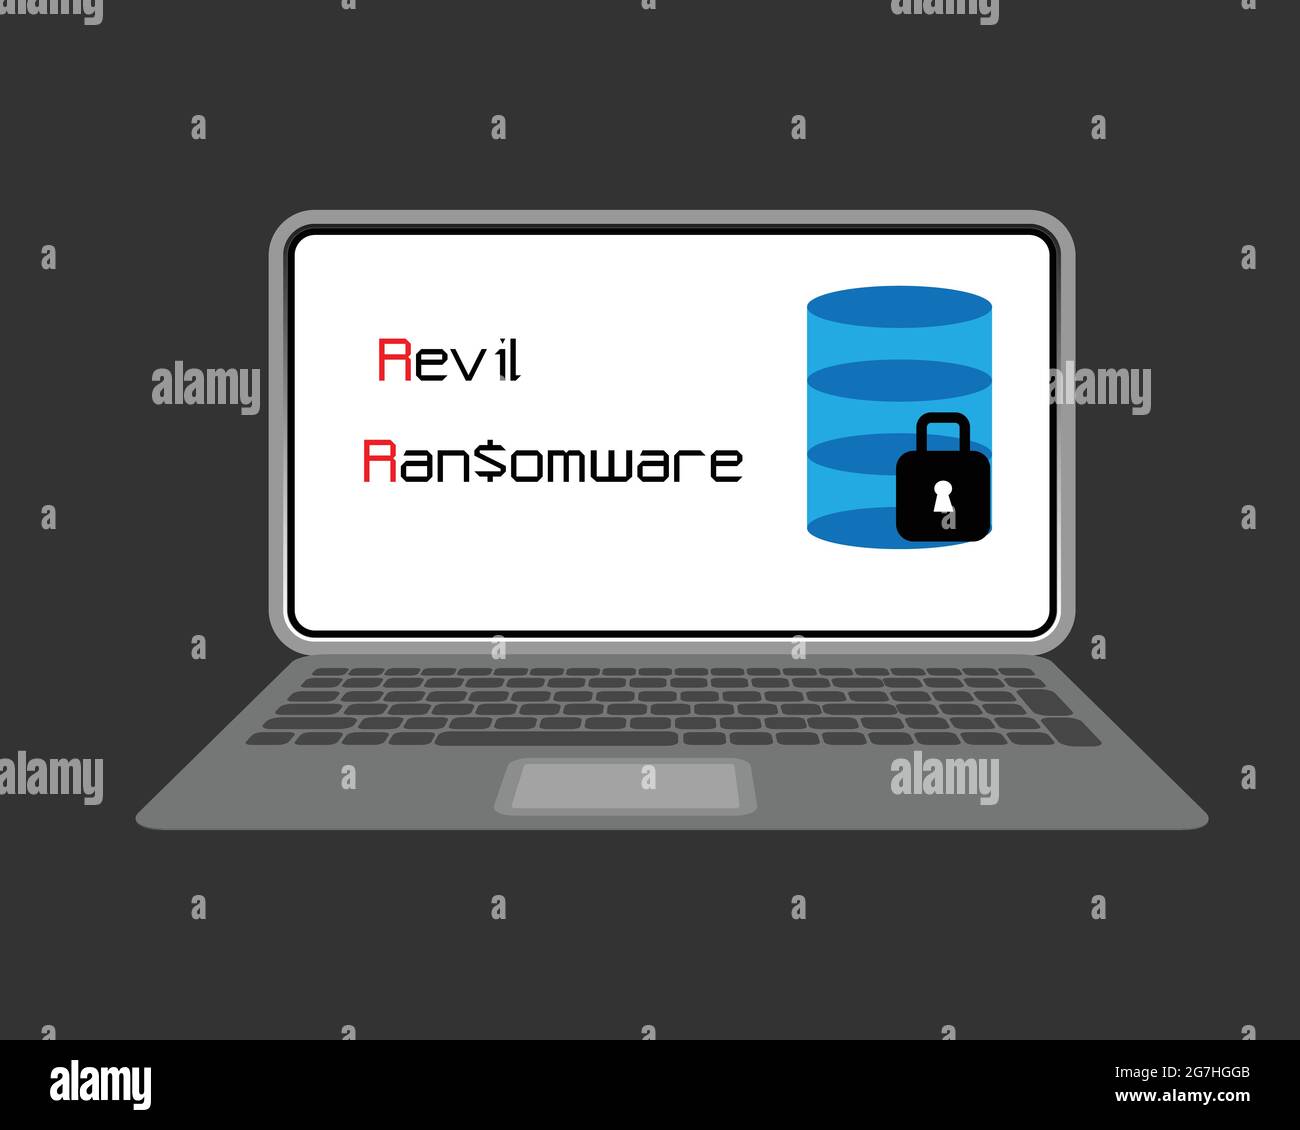 Revil ist eine Art von Software, die als Dienste bei der Angriffe auf ungeahnte Opfer. Cyber-Sicherheitskonzept. Stock Vektor